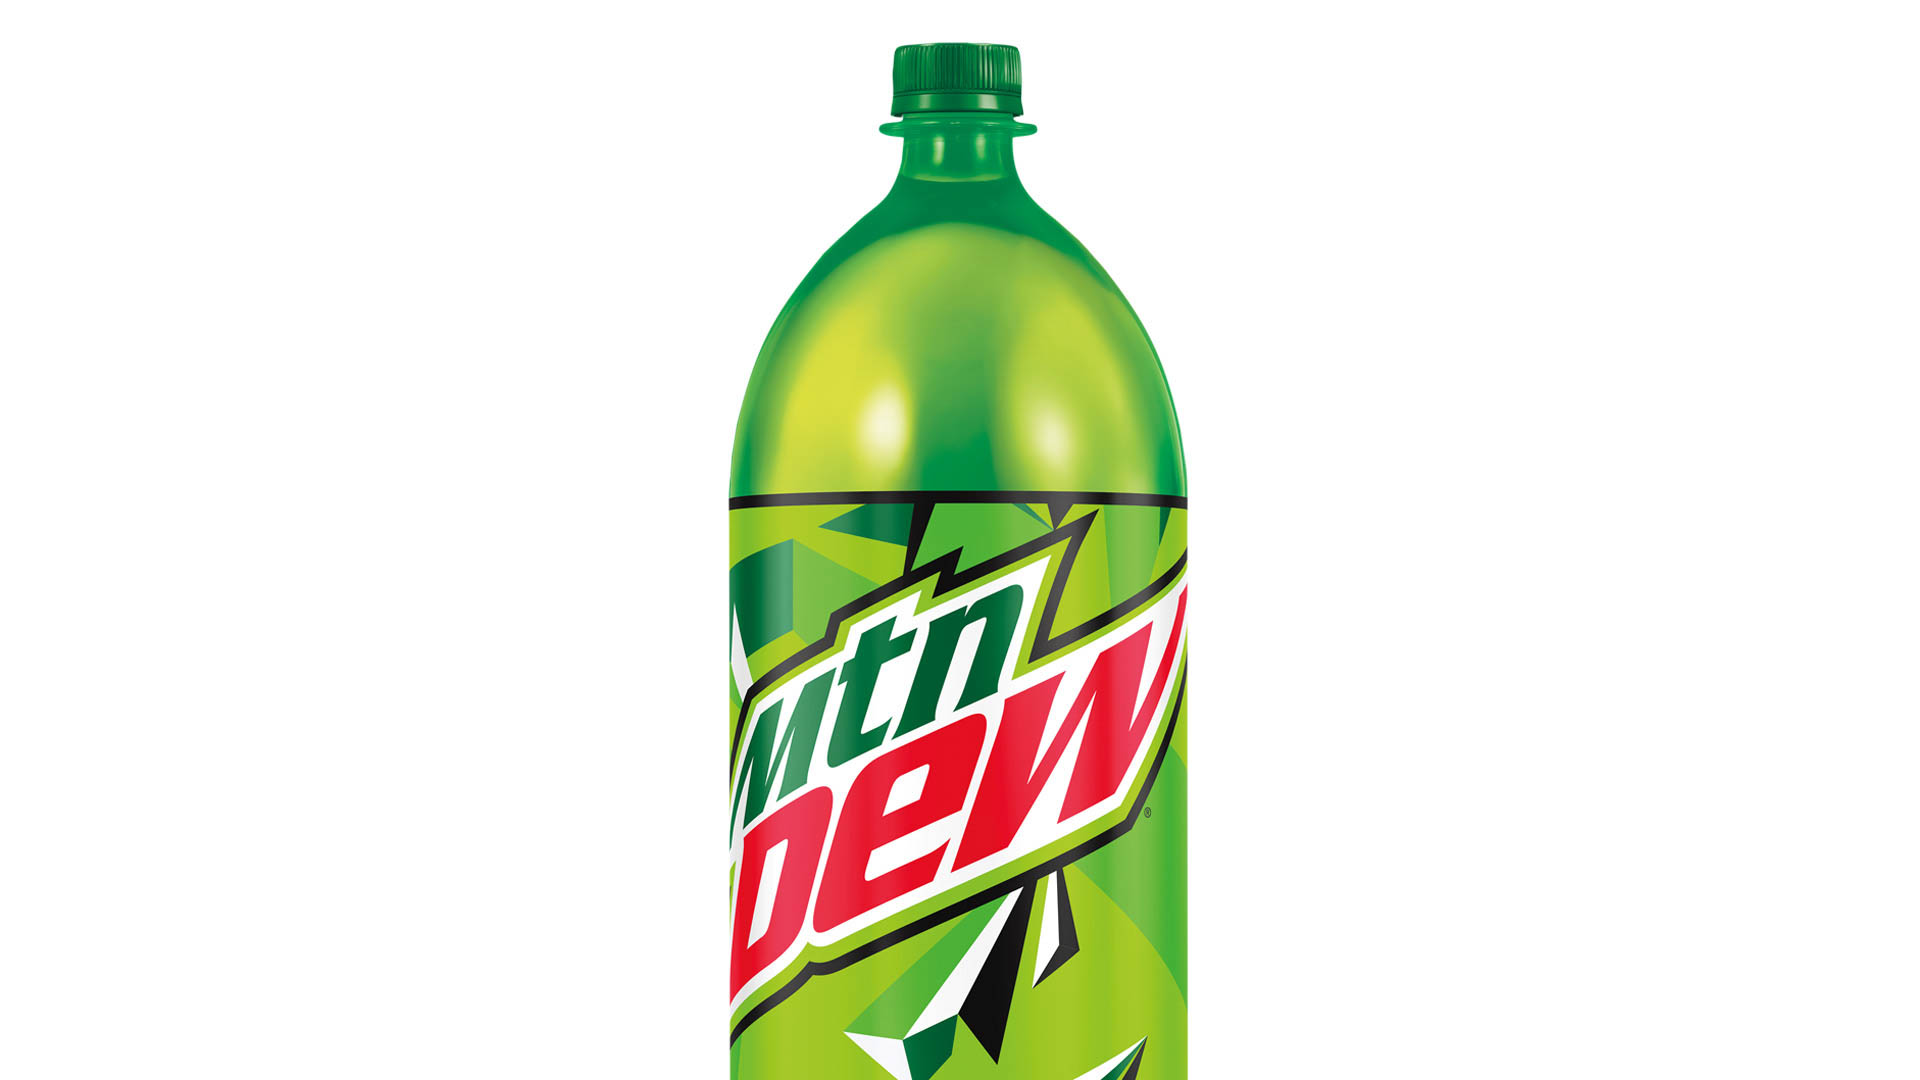 diet mountain dew 2 liter